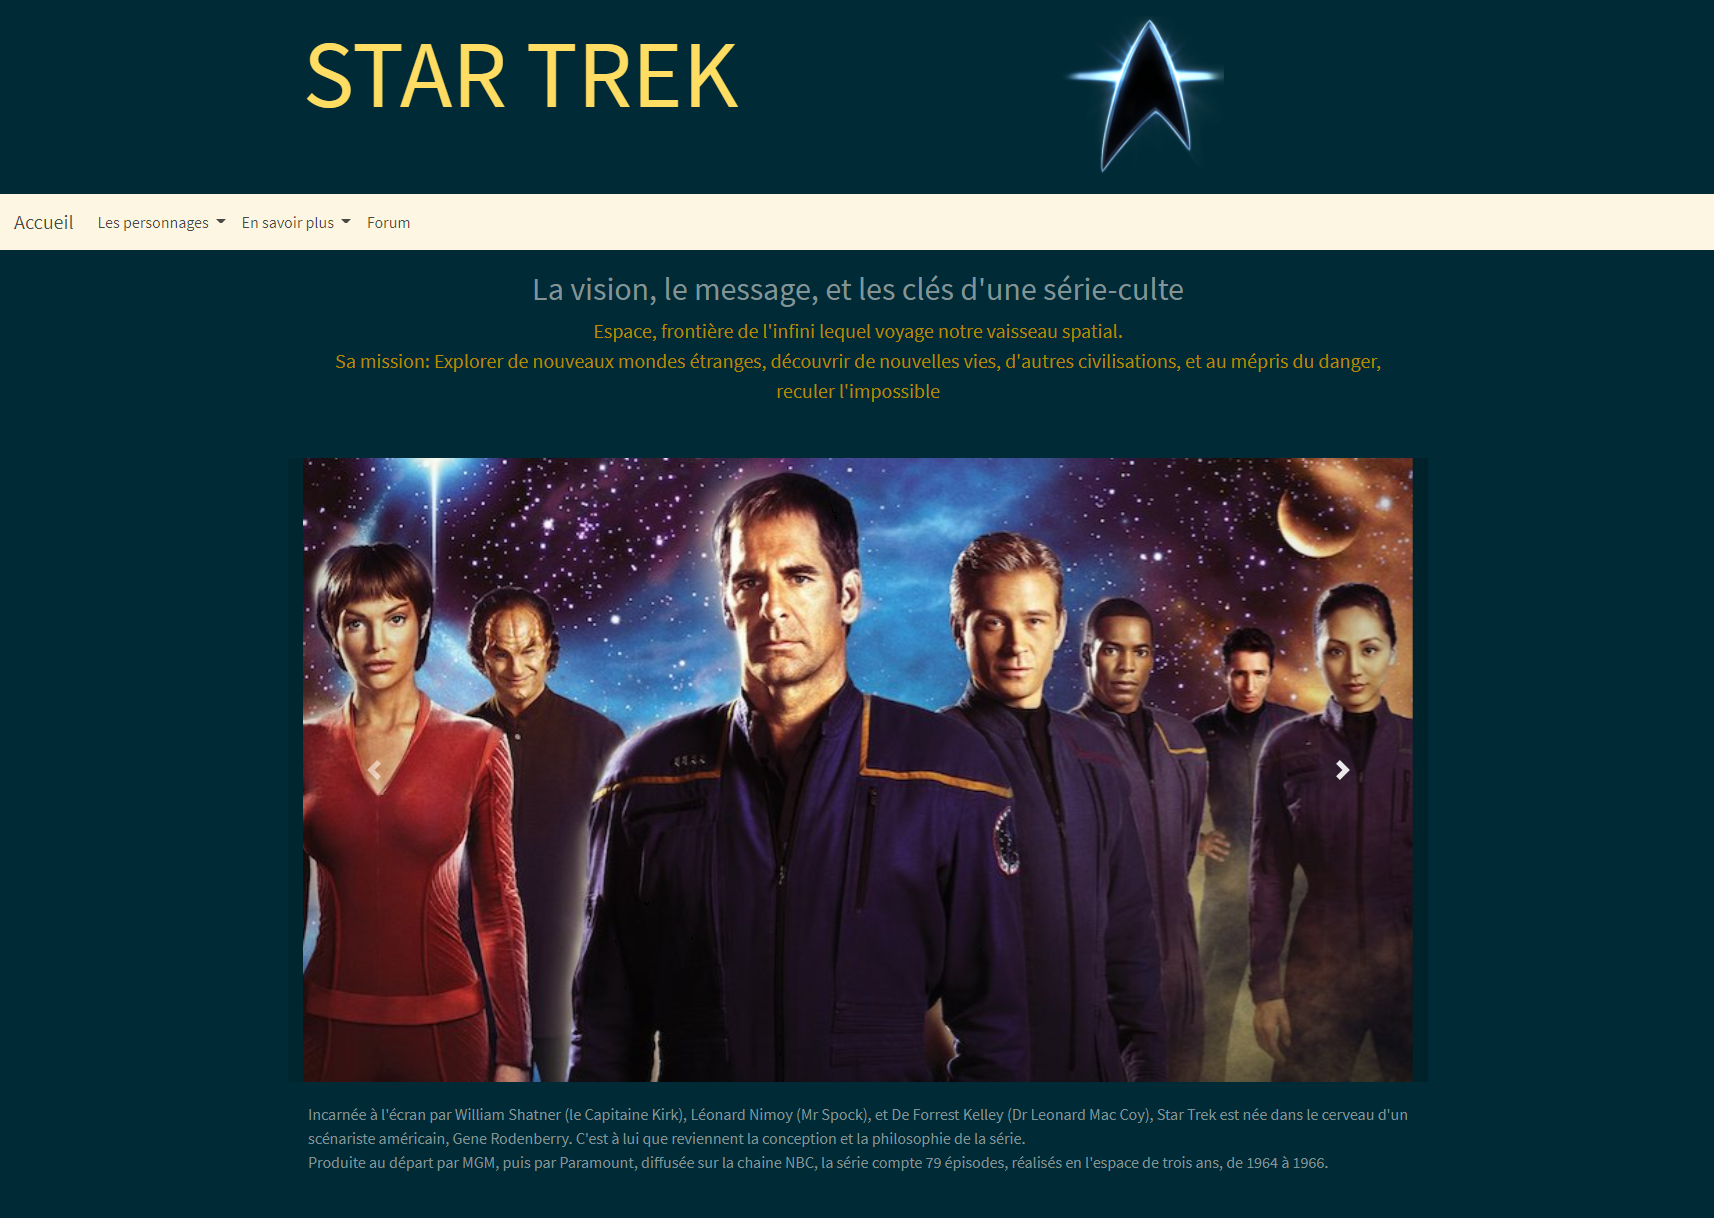 Image site Star Trek après relooking